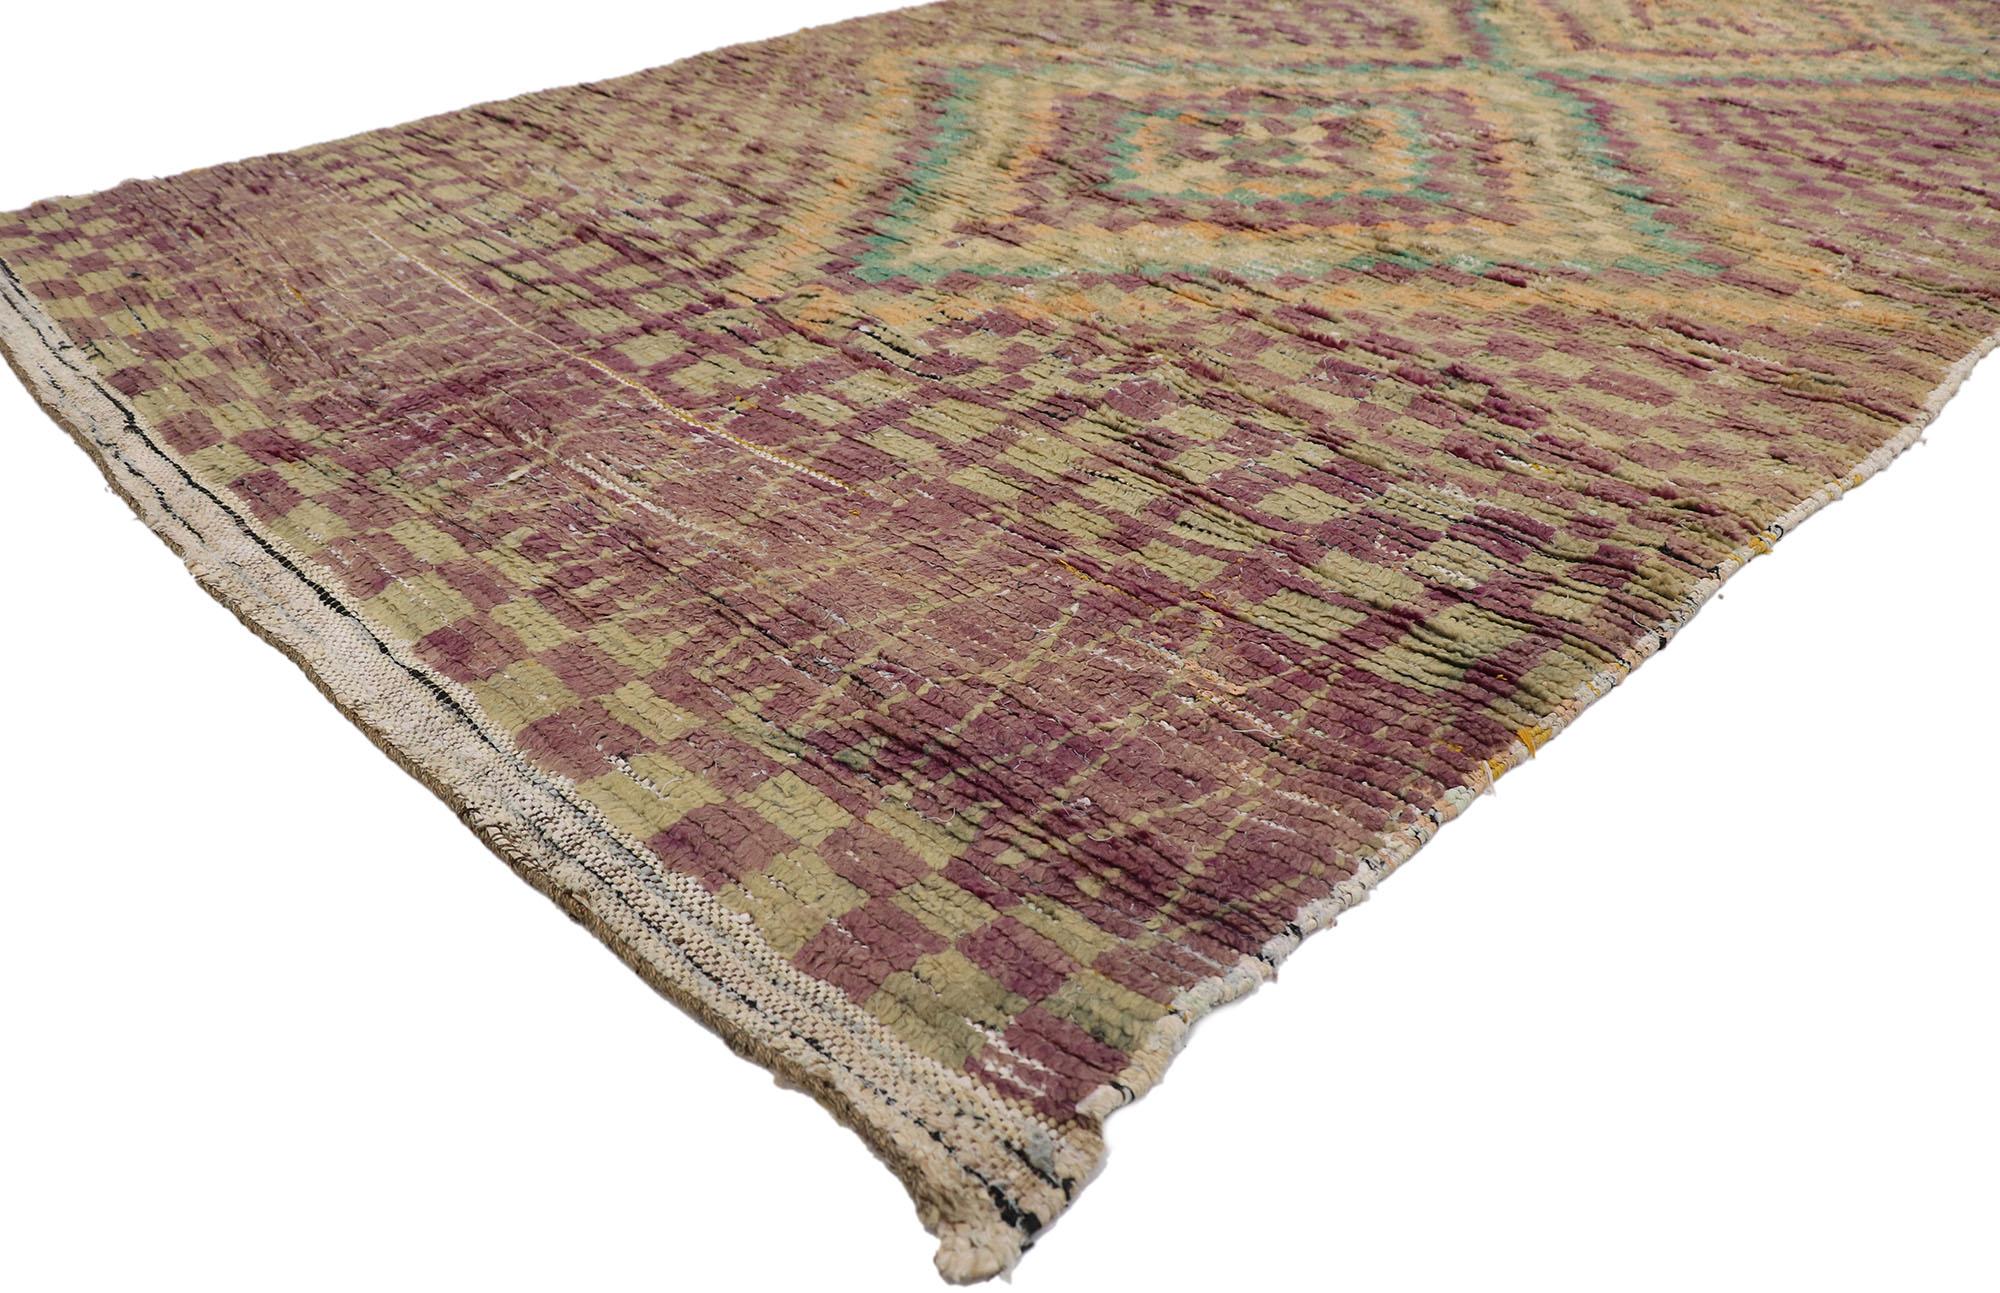 21431 Vintage Moroccan rug, 05'06 x 09'07.